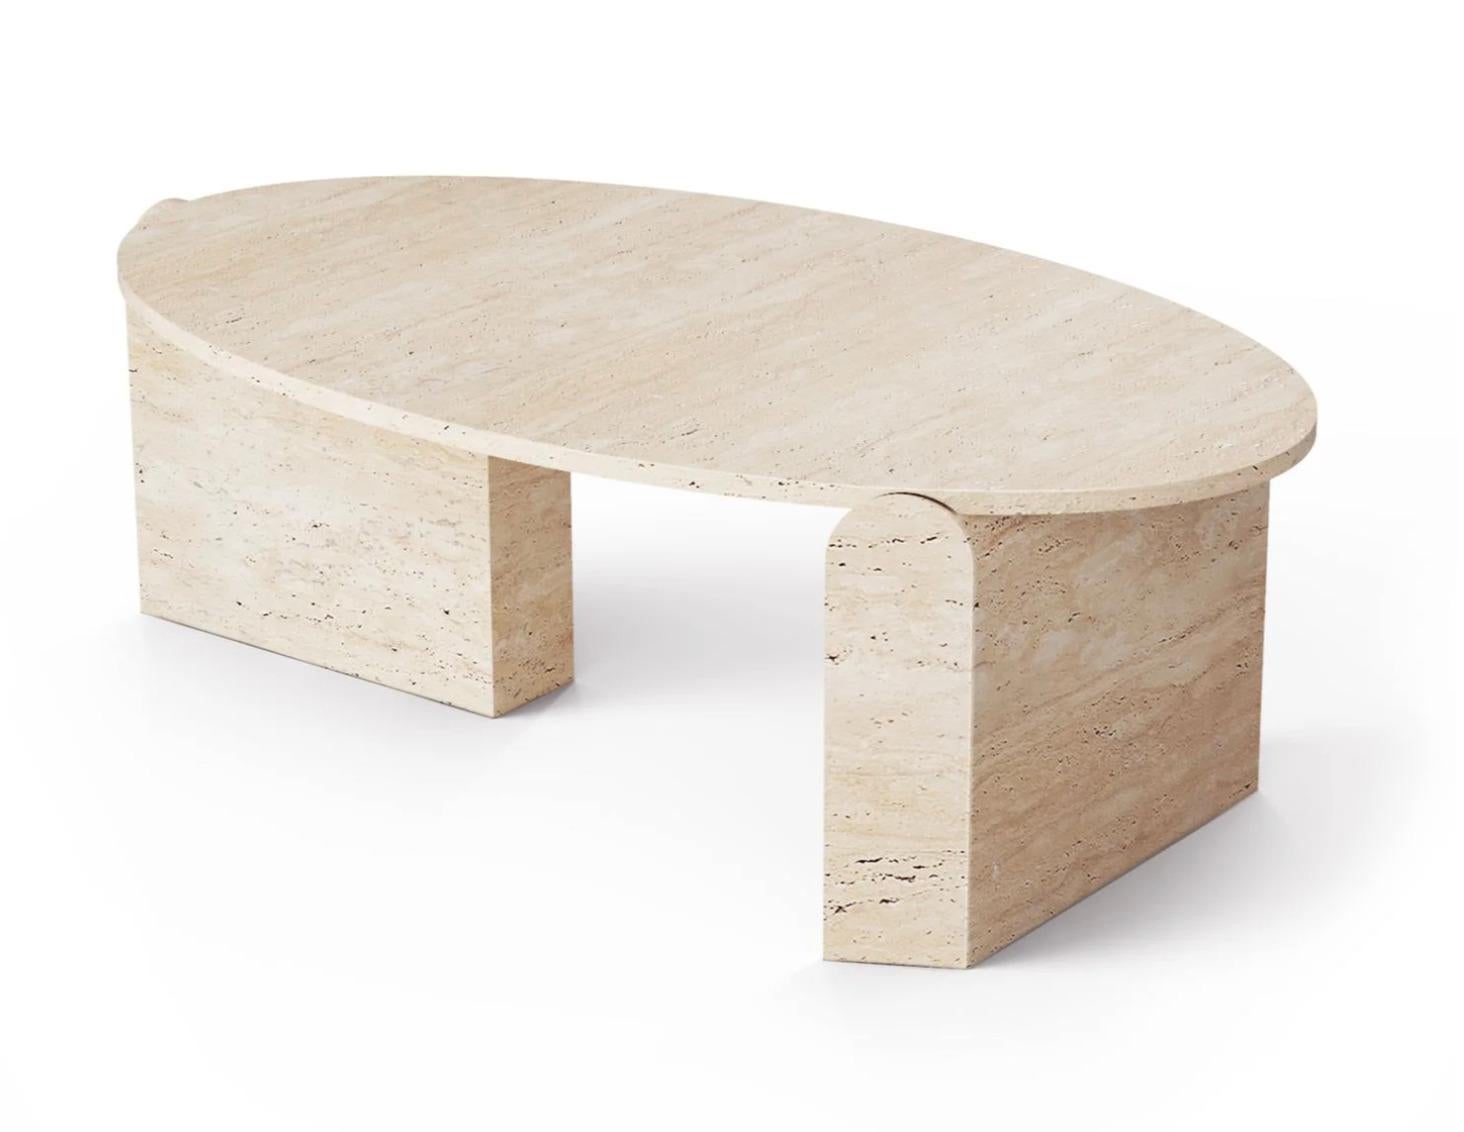 Der ovale Jean-Mitteltisch ist einzigartig in seiner Konzeption und inspiriert von Organic Modern. 
Naturstein ist in seiner Individualität unwiederholbar, so dass jeder Jean-Mitteltisch ein Unikat ist, das die natürlichen Maserungen, Texturen und